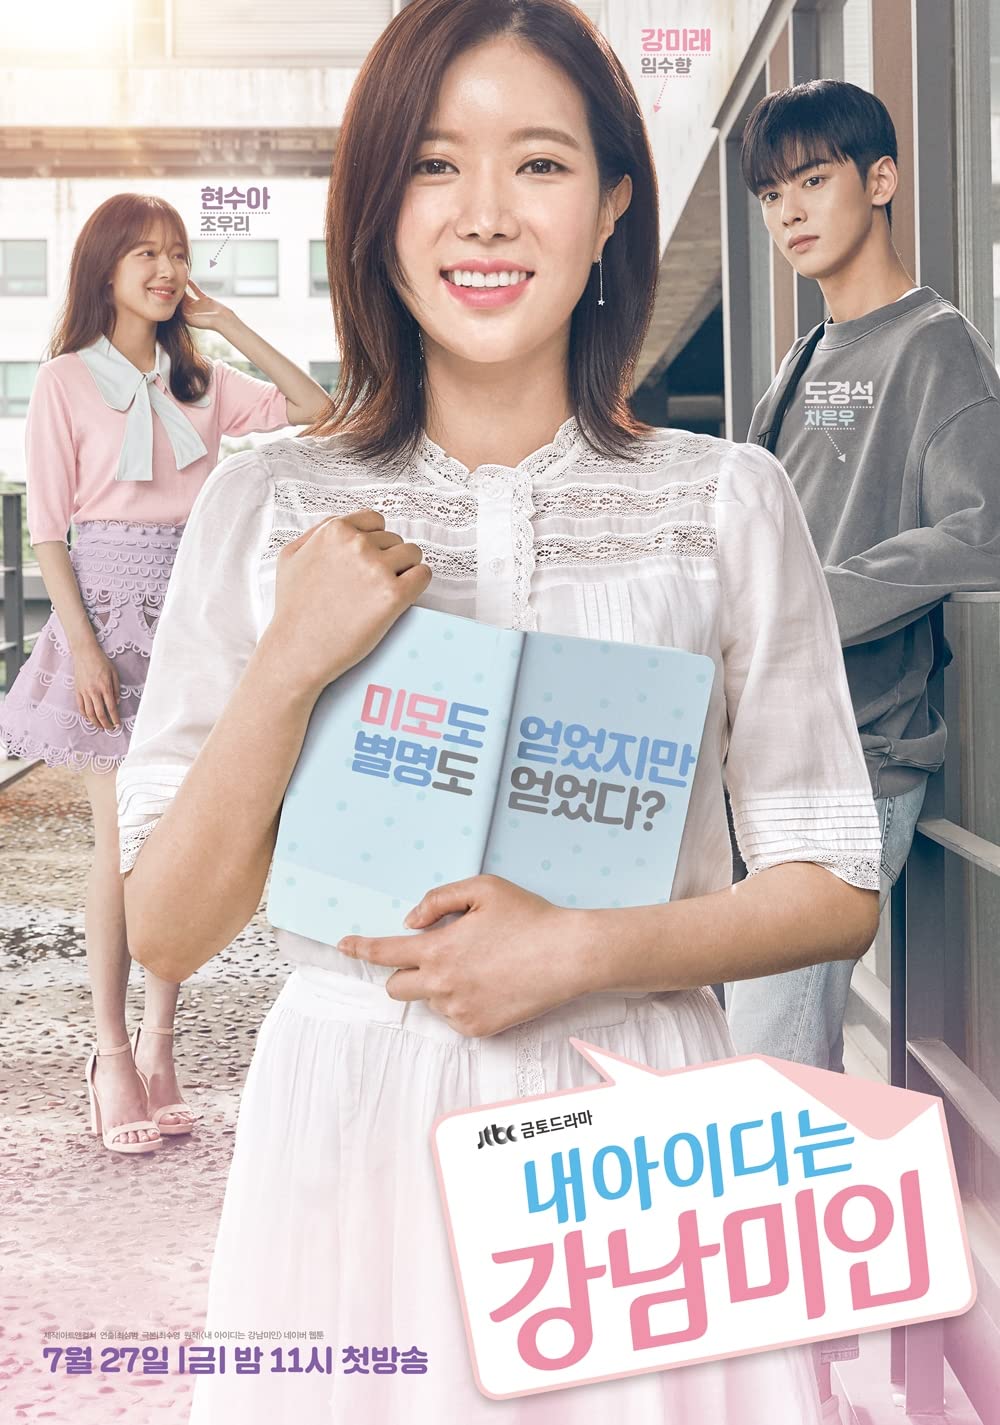 11 Drama Korea terbaik tentang kehidupan mahasiswa, penuh perjuangan